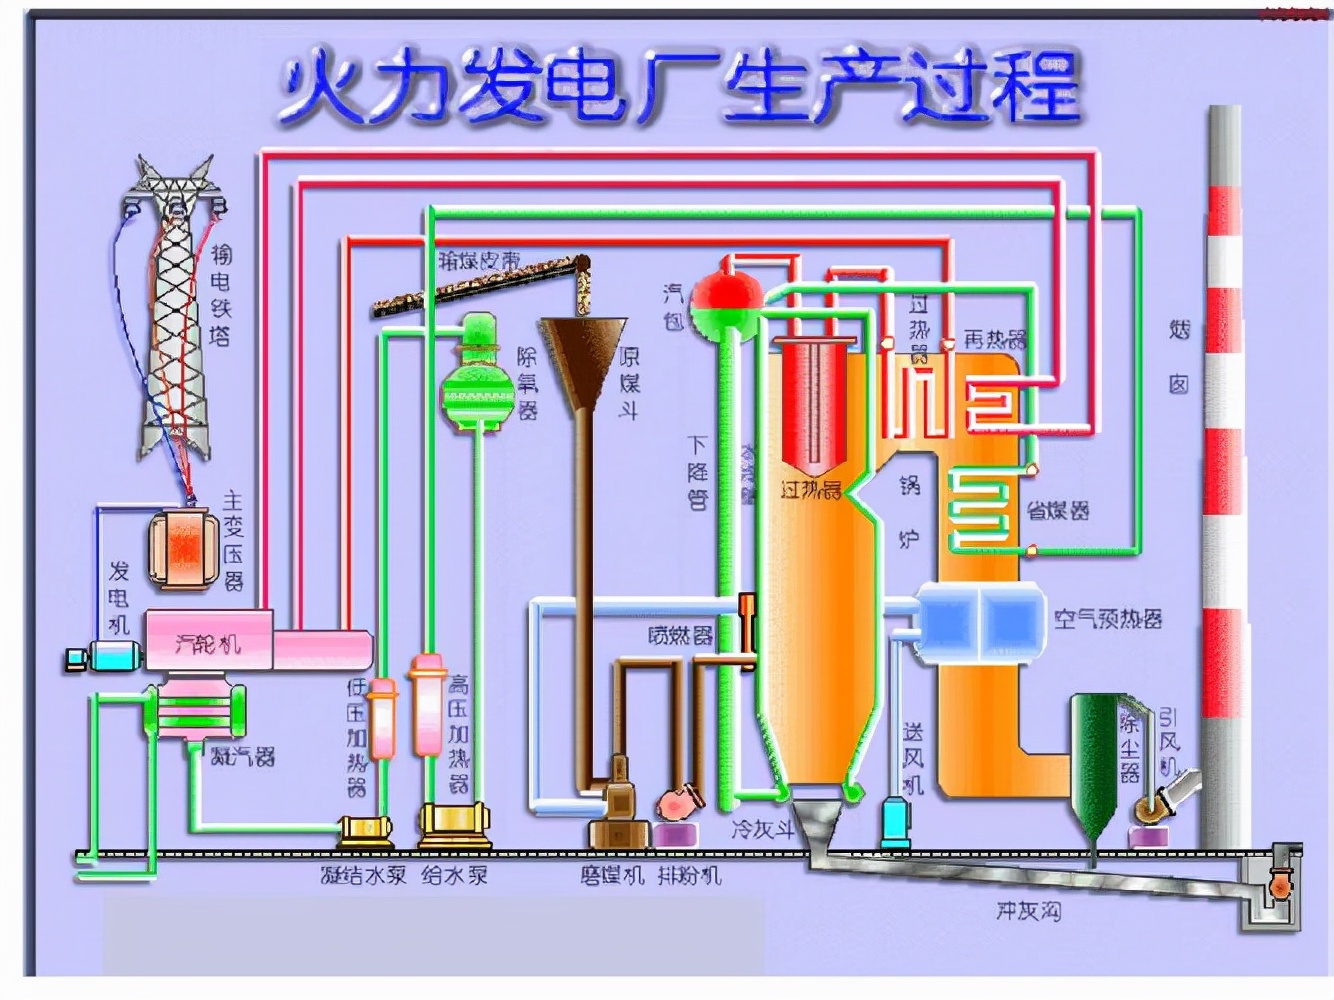 中国燃煤锅炉技术突破,或将改变传统火电厂模式,各国想求合作?